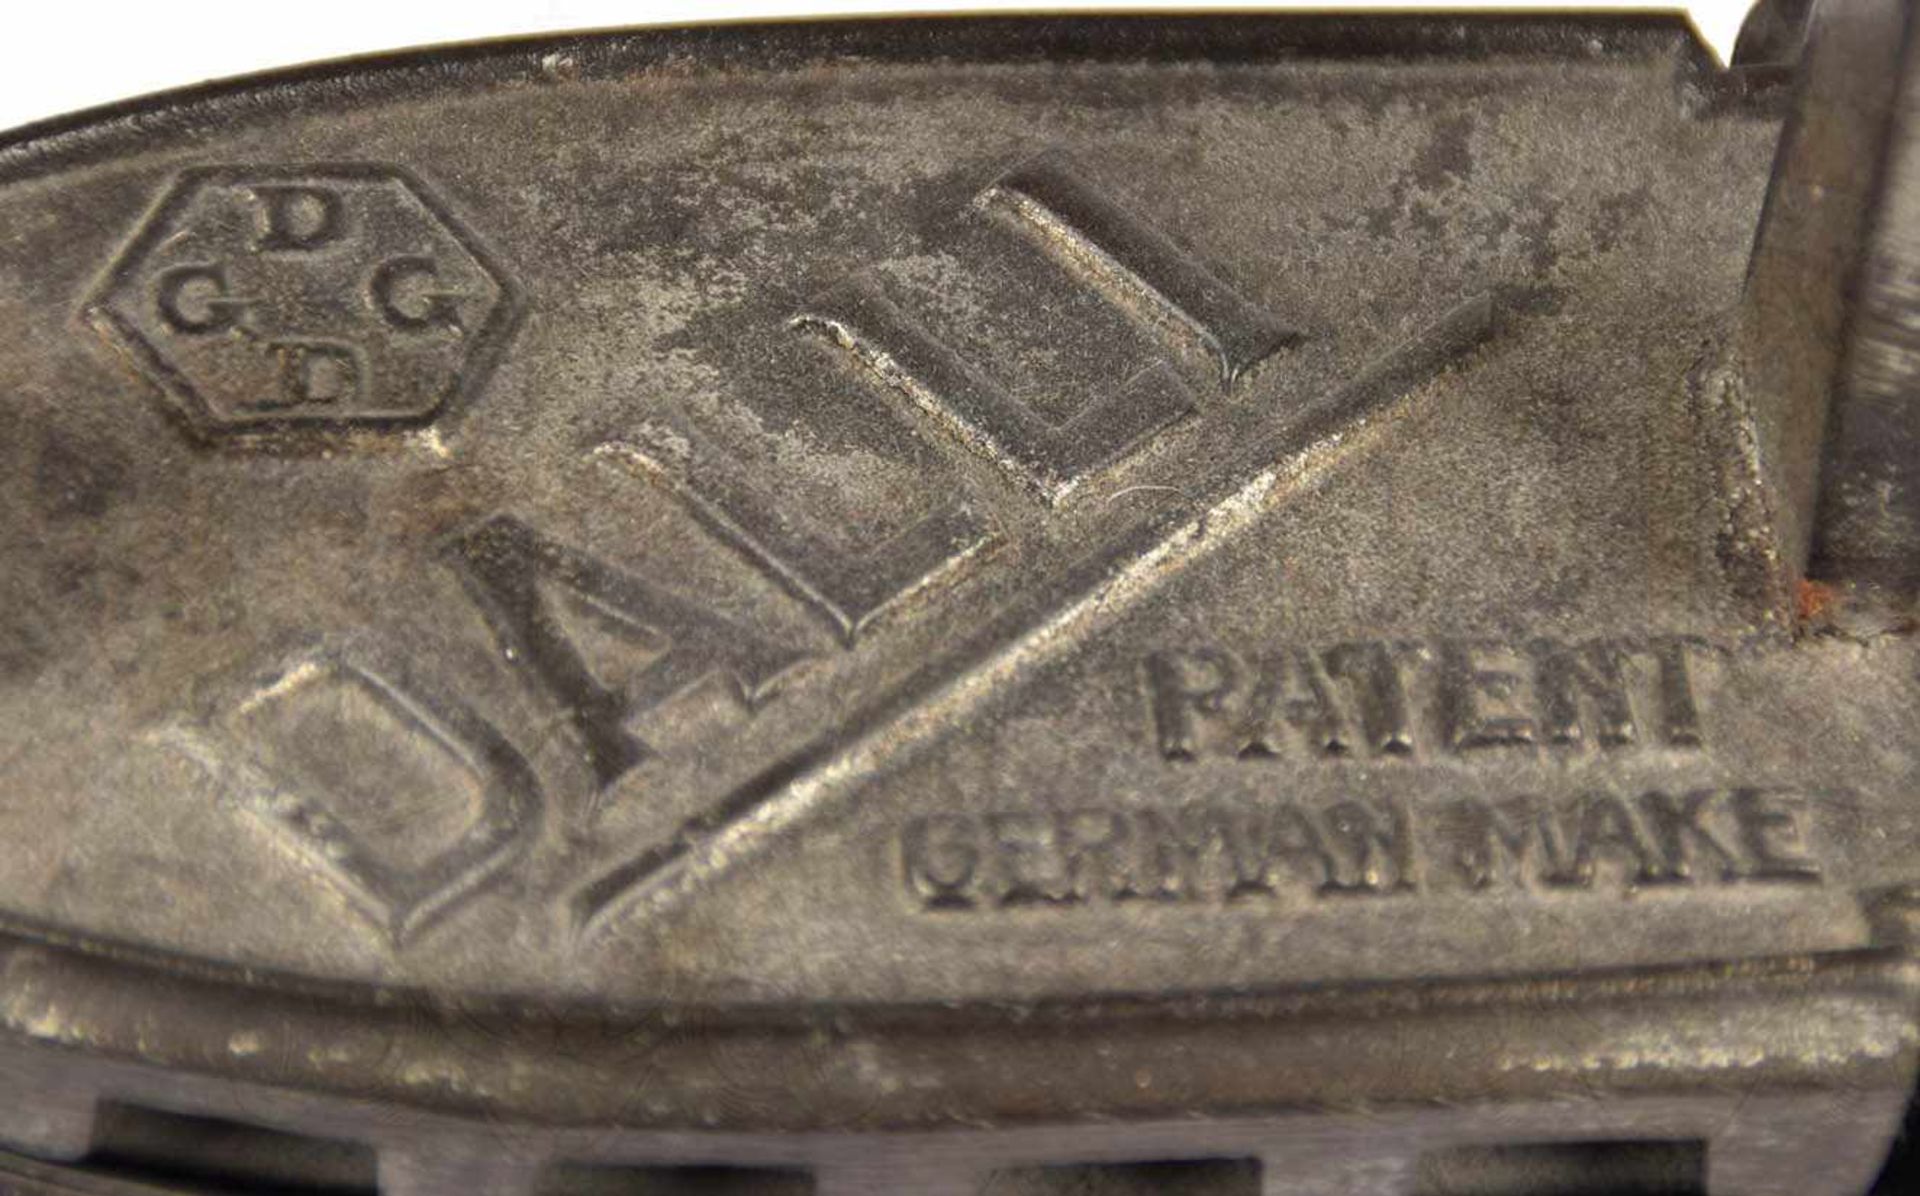 BÜGELEISEN, Marke „Dalli“, „Patent German Make“, Gusseisen, f. Kohle-Befeuerung, klappbarer Deckel - Image 2 of 4